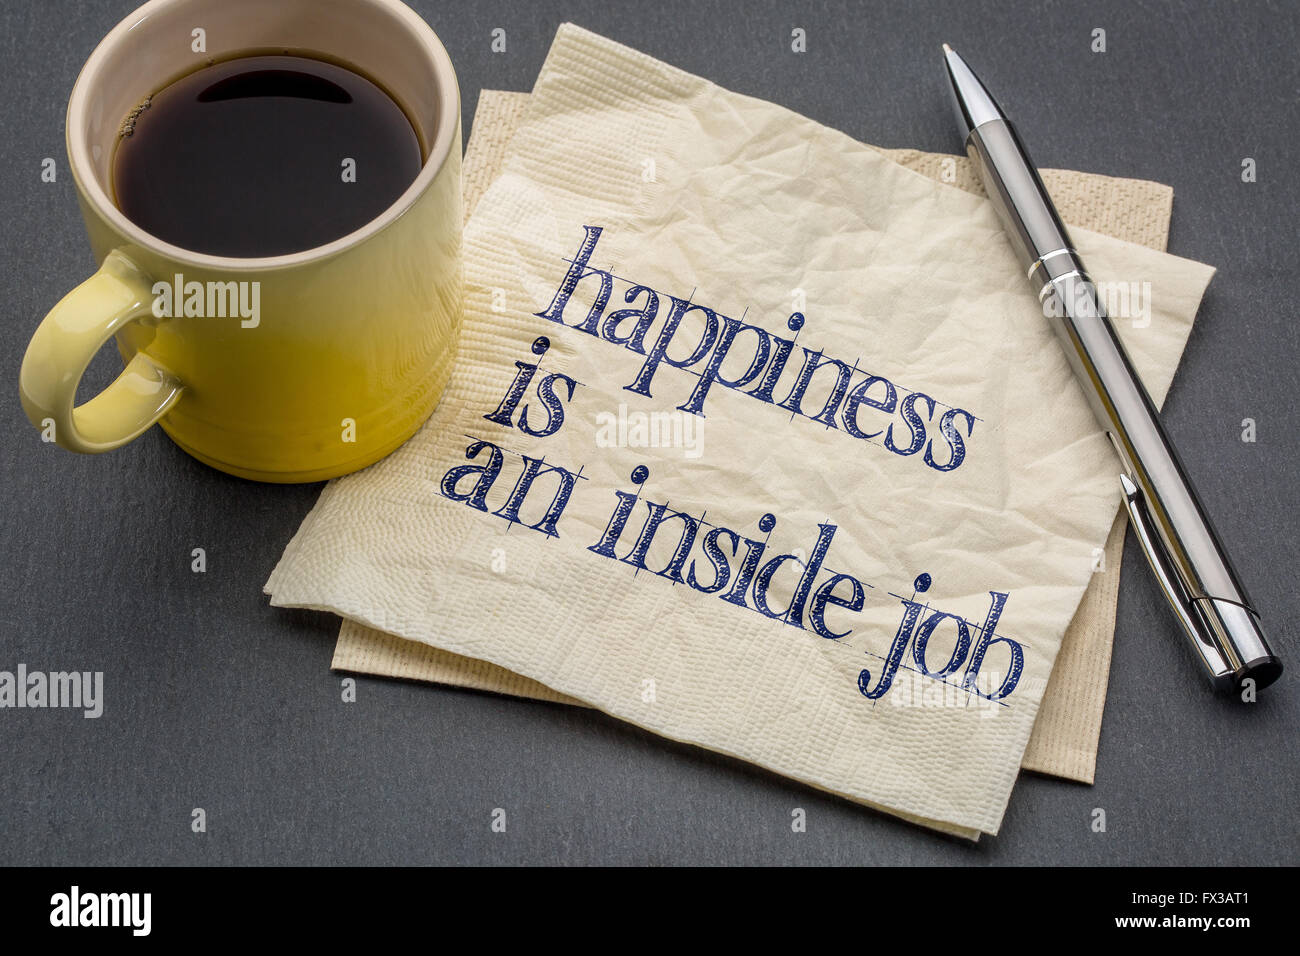 La felicità è un inside job - grafia di ispirazione su un tovagliolo con tazza di caffè contro di ardesia grigia sullo sfondo di pietra Foto Stock